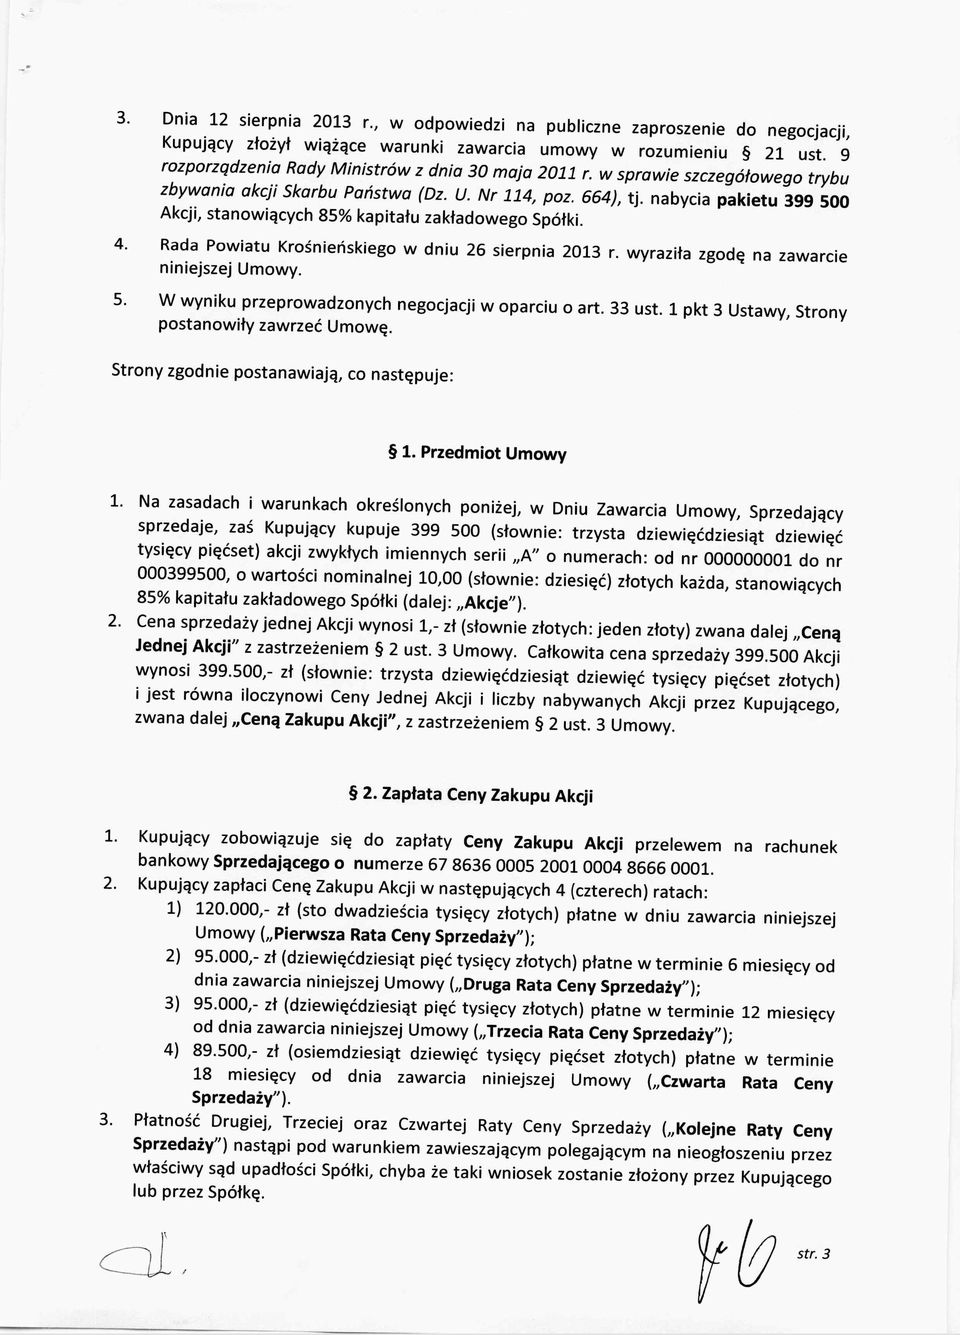 Kupujący Rada Powia tu Krośnieńskiego w dniu 26 sierpnia 2013 r. niniejszej Umow y. W wyniku przepr owadz onych negocjacji w oparciu o art. 33 ust.